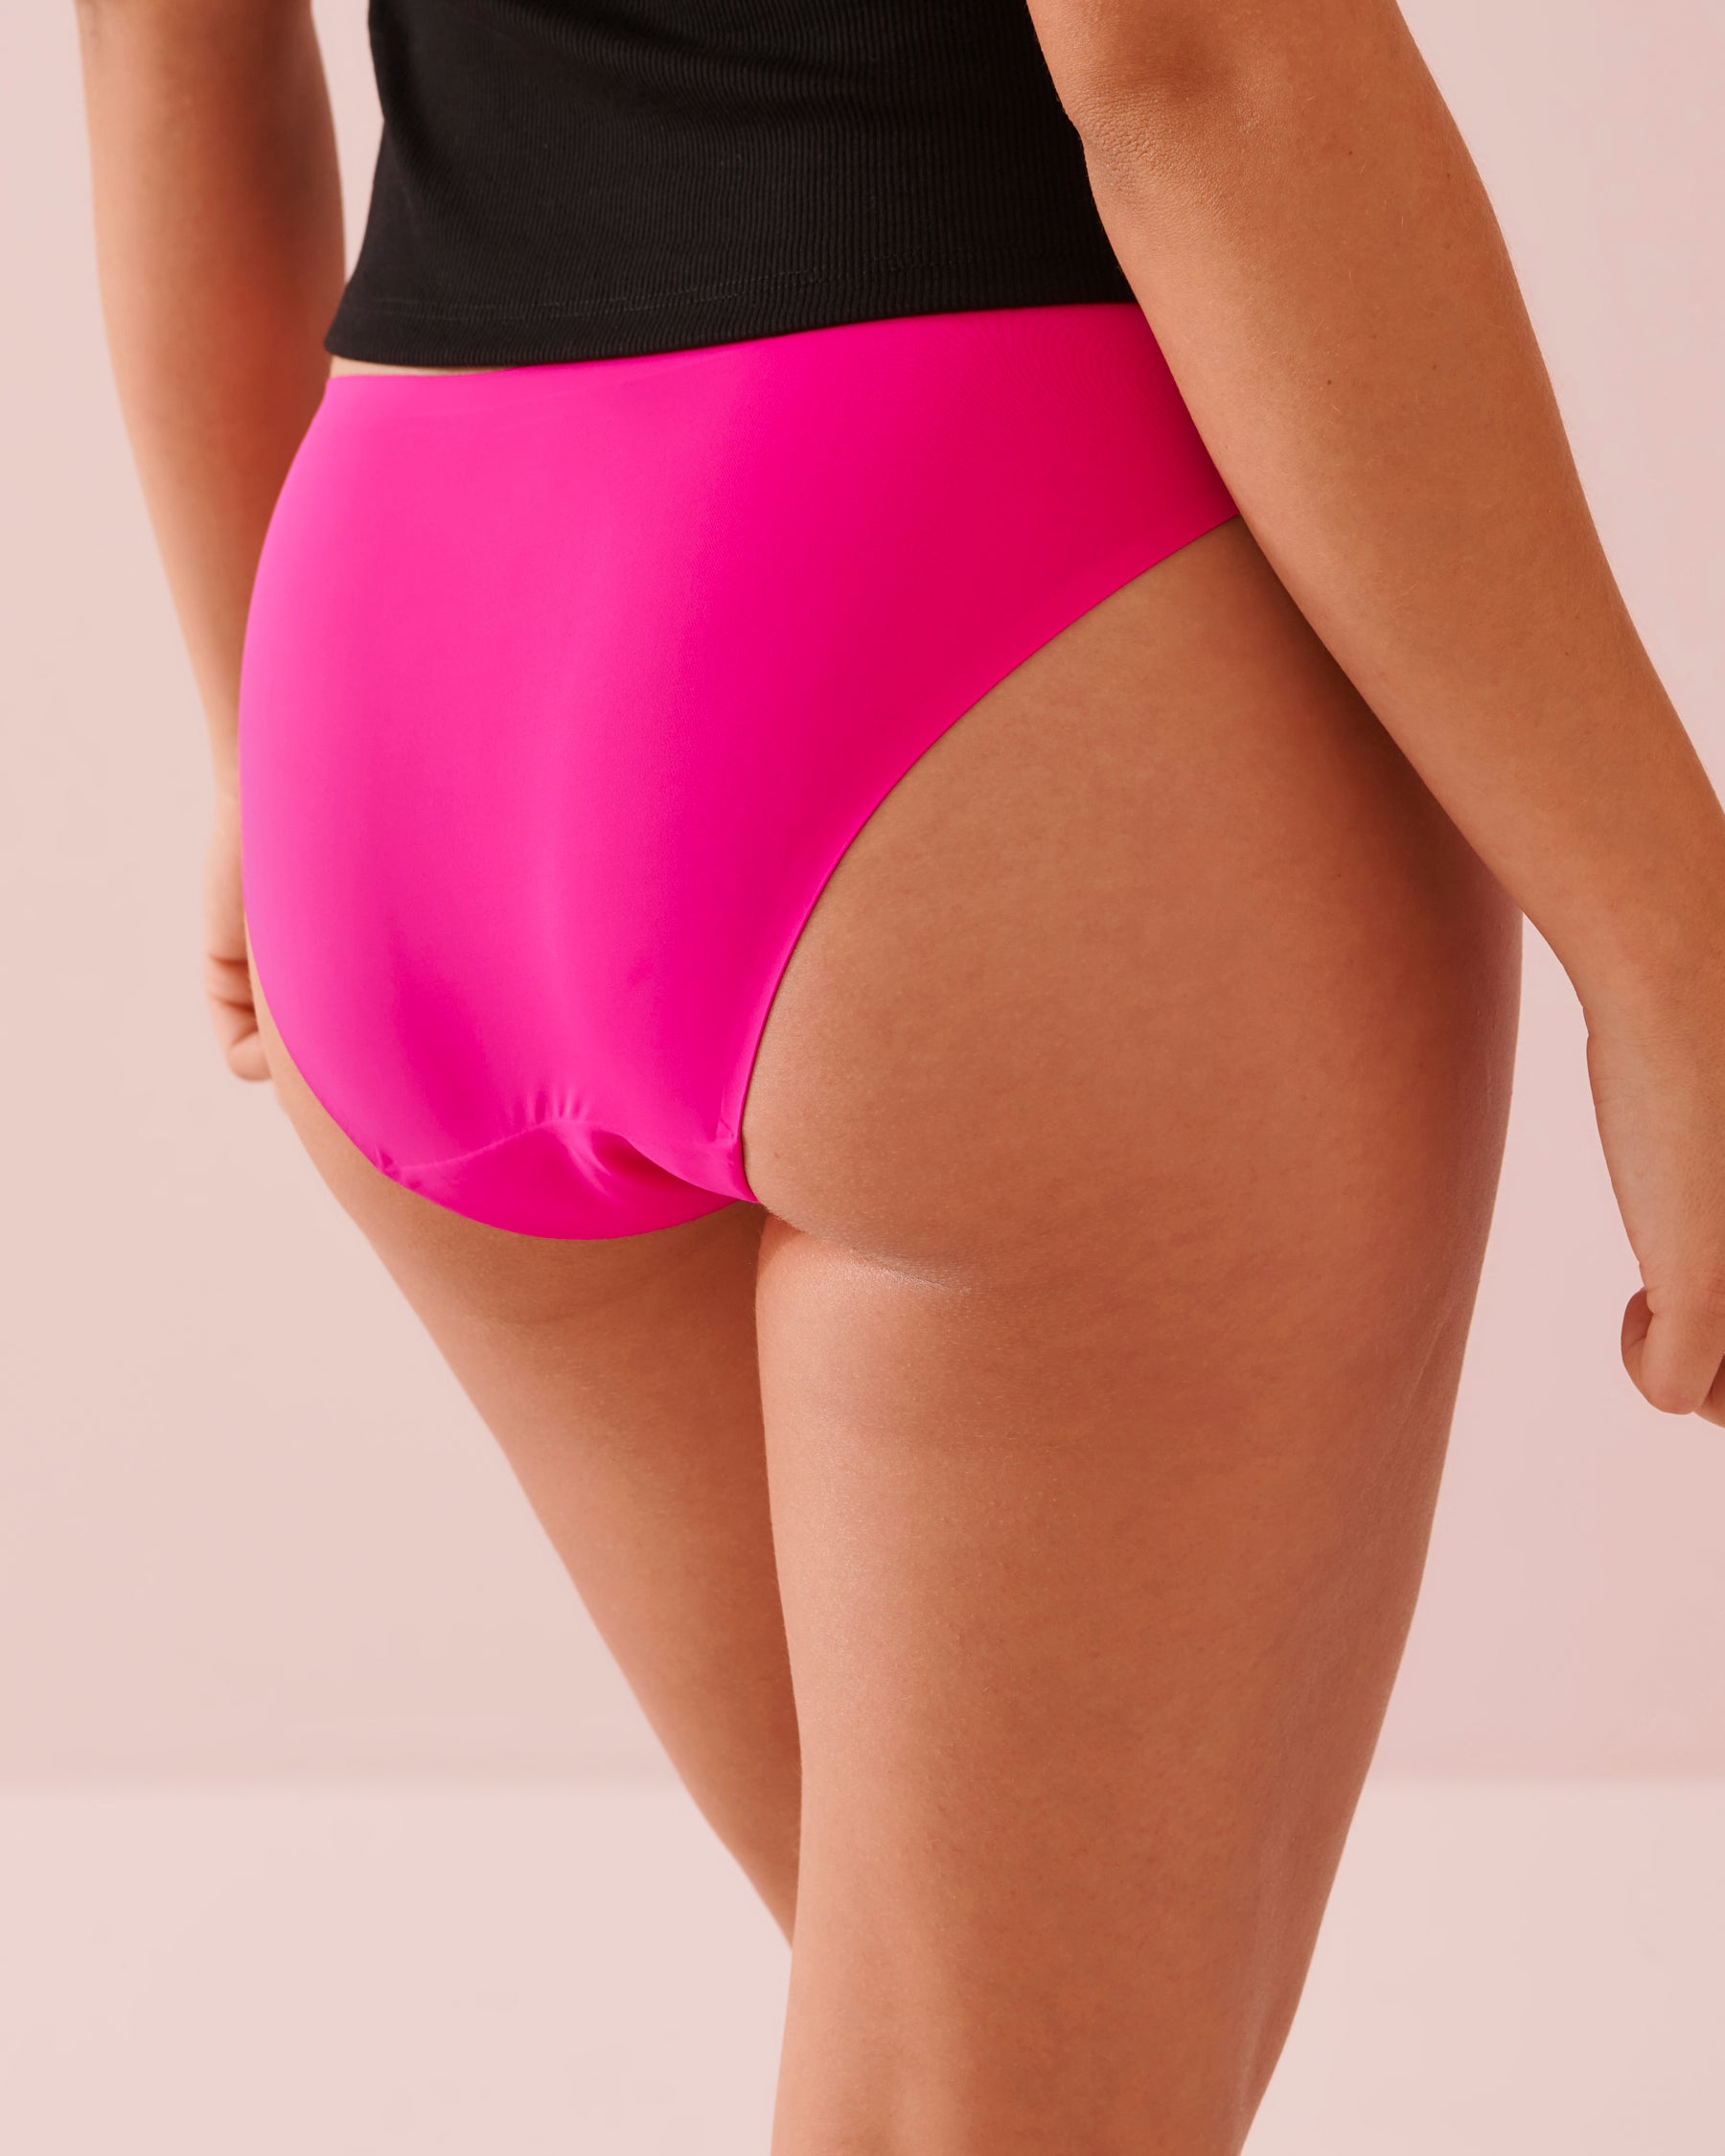 Bikini Cut Period Panty - Pink